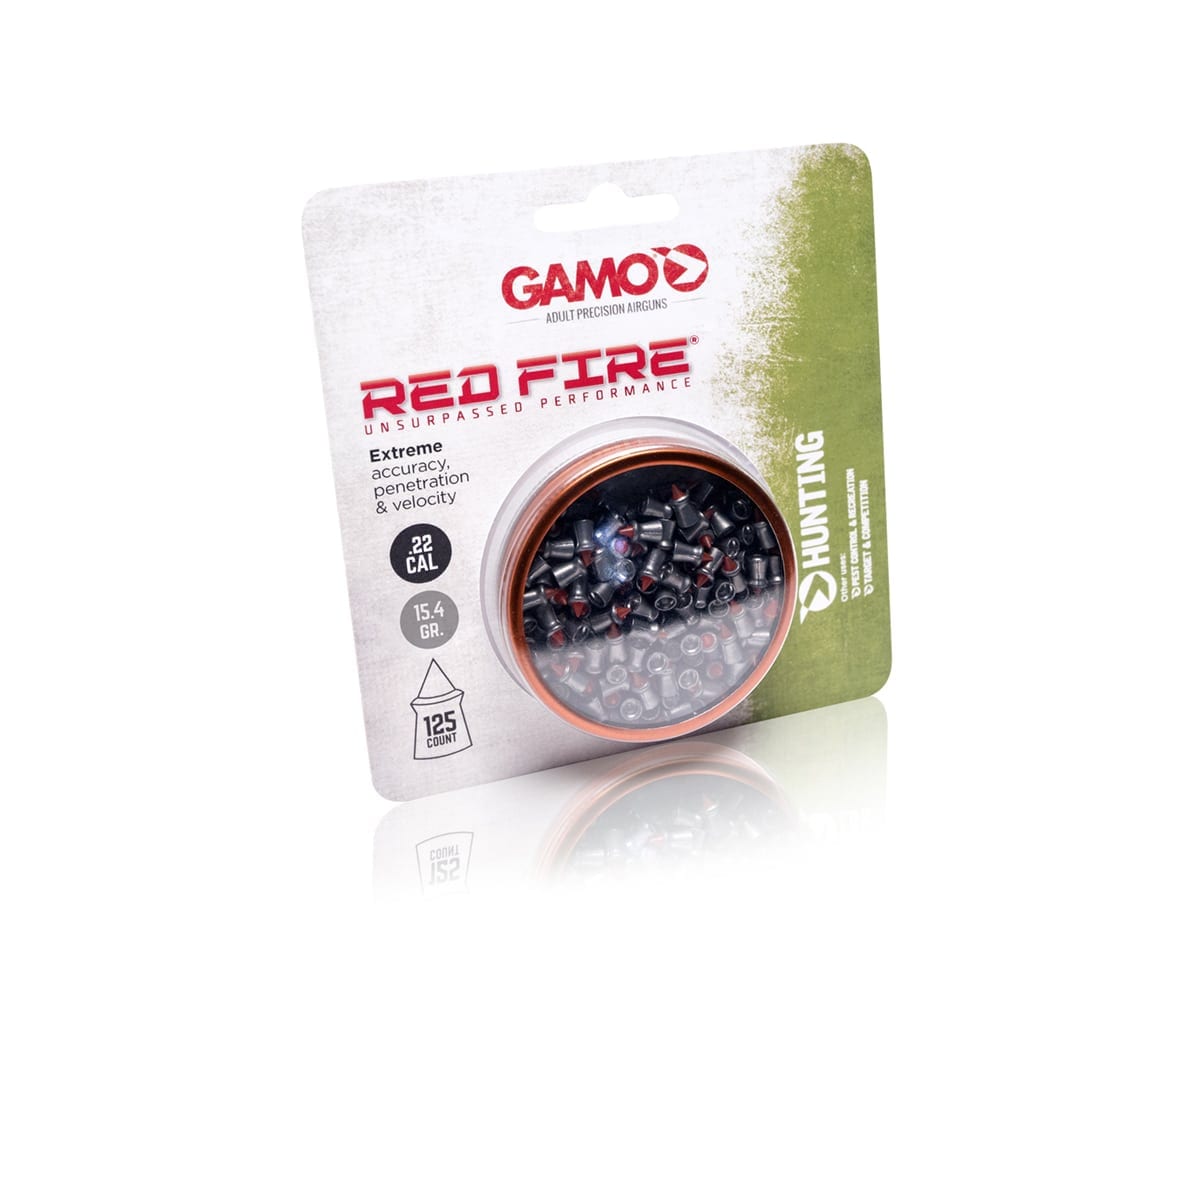 Balines Gamo Red Fire 5,5 mm 100 ud, compra online